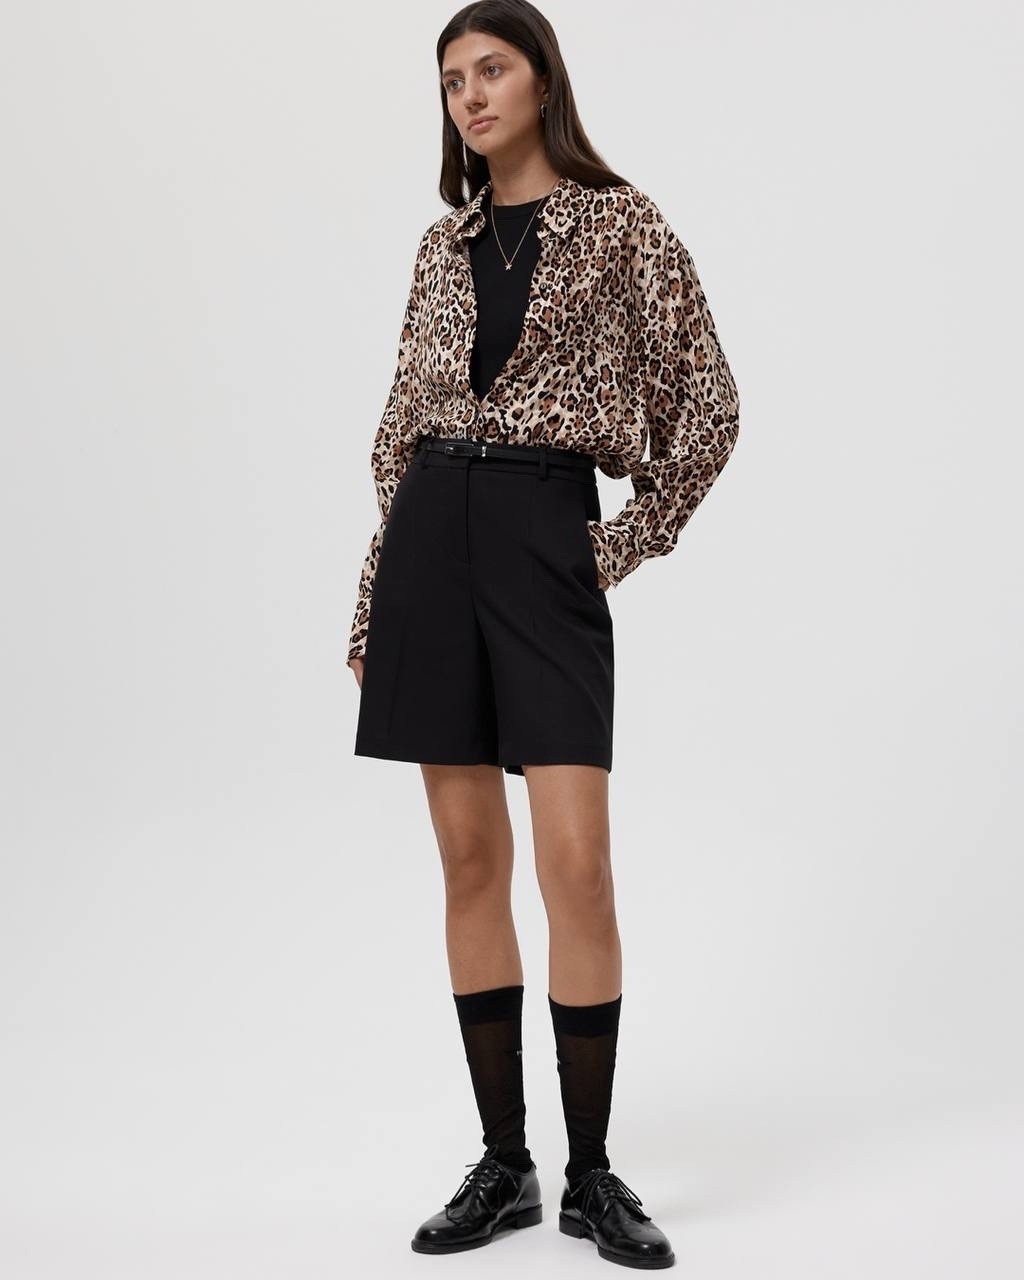 Блузка с леопардовым принтом